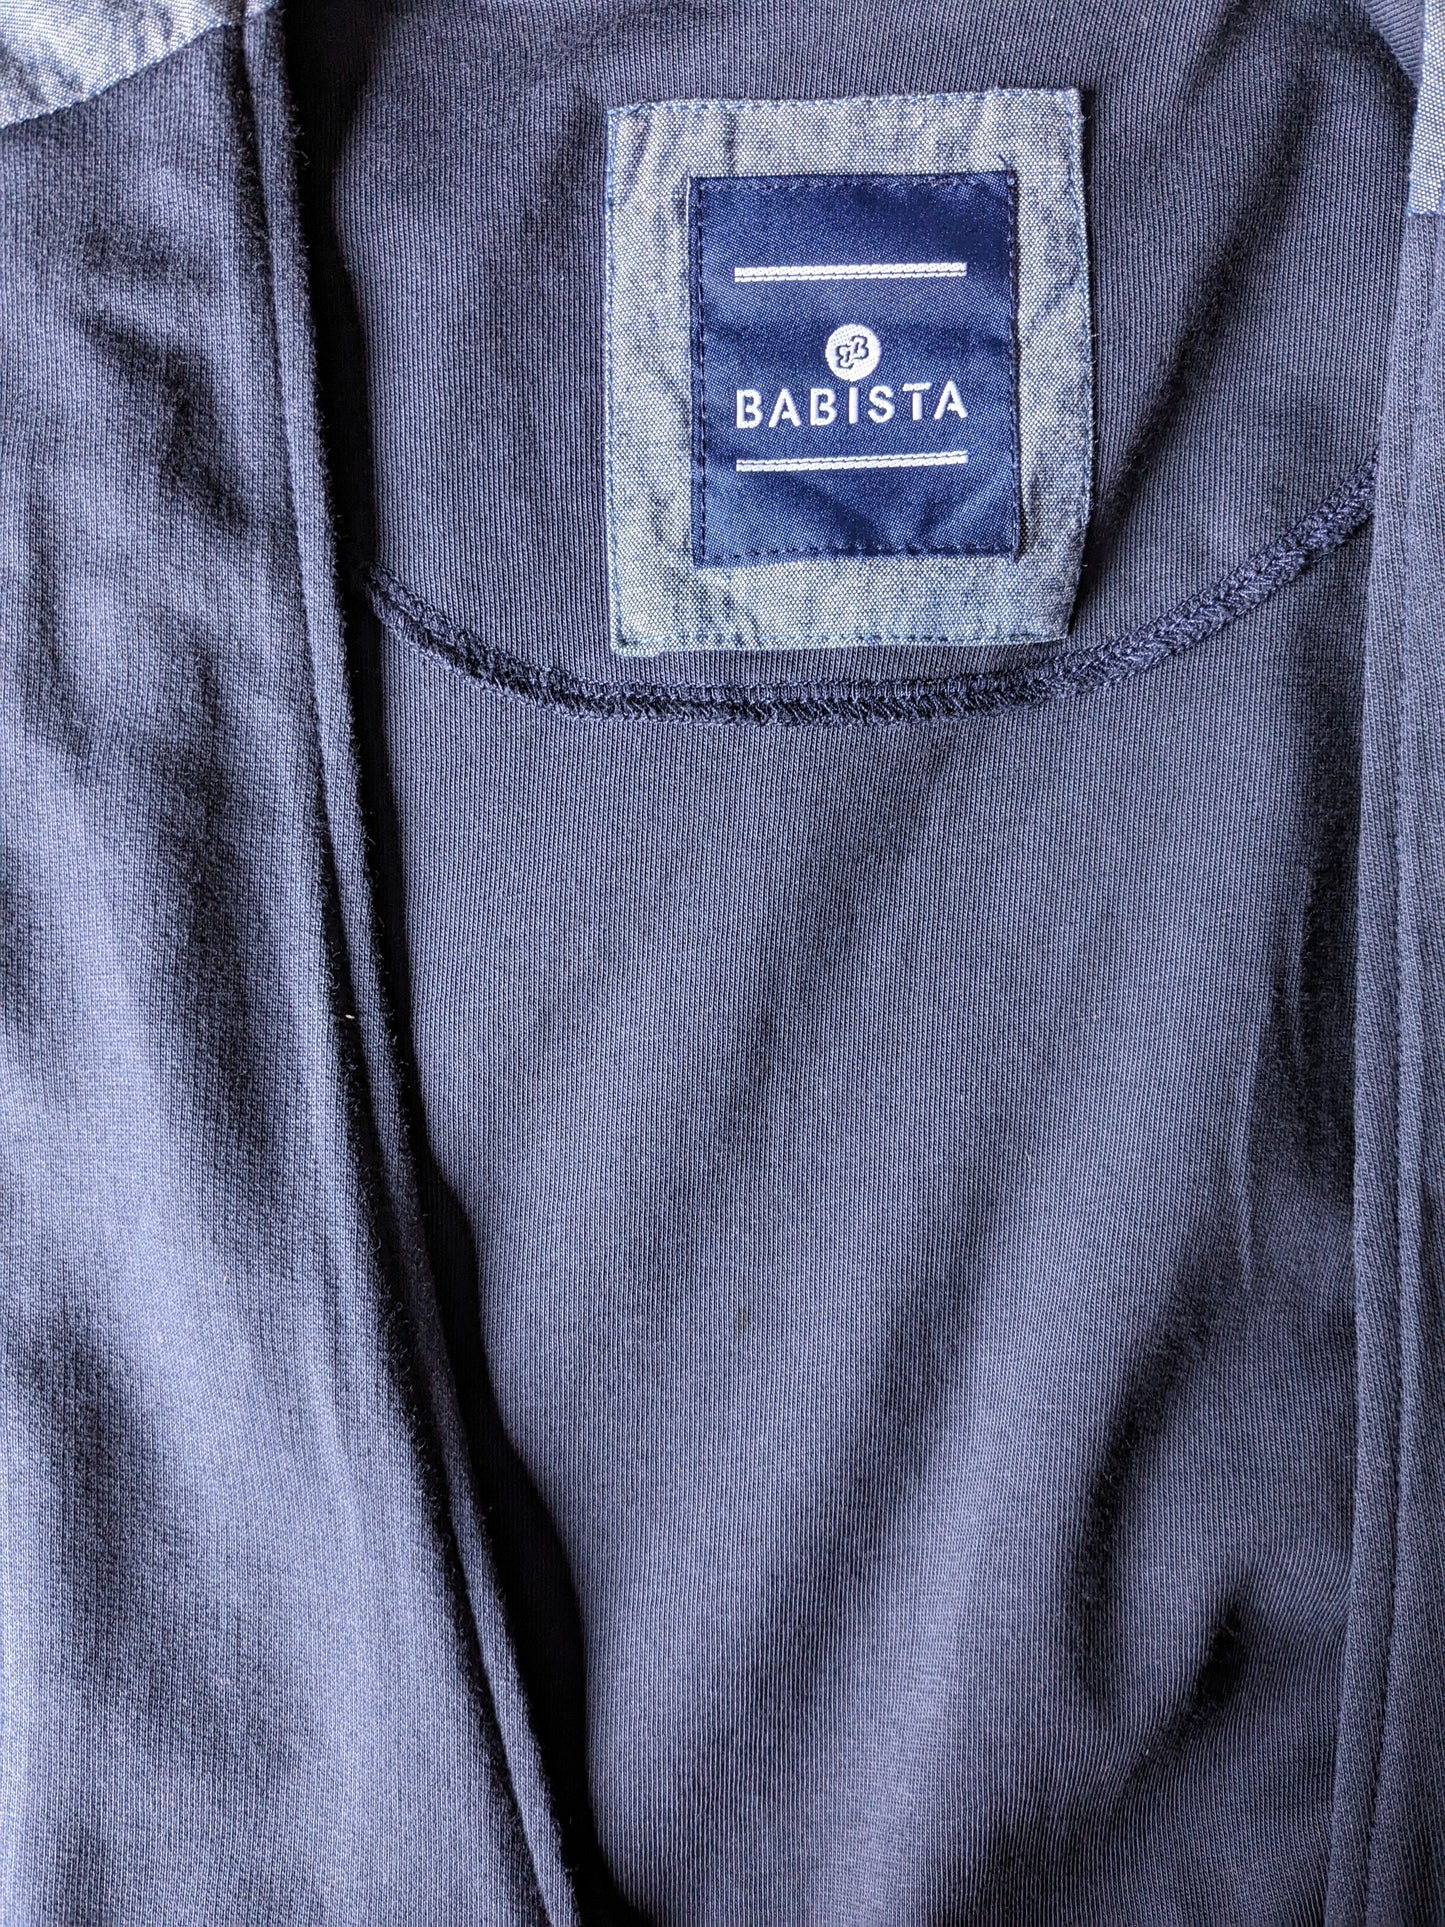 Babista casual waistcoat. Dark blue colored. stretch. Size 4XL / XXXXL.